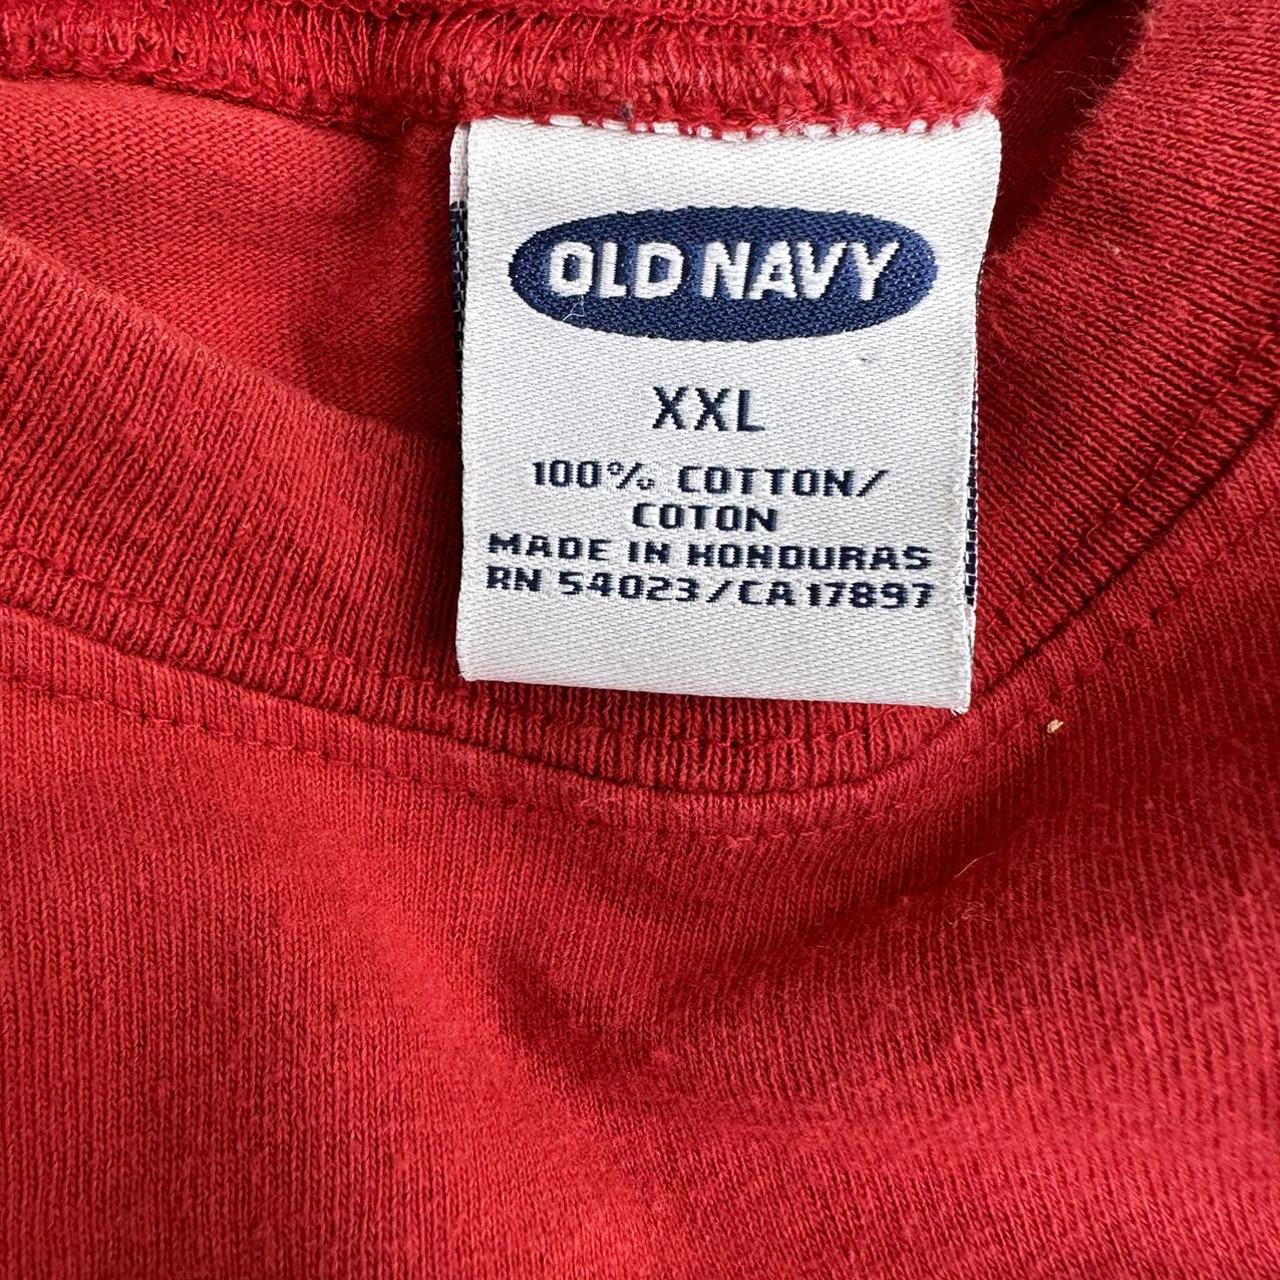 Vintage 2000 distressed Old Navy Shirt brown stain - Depop